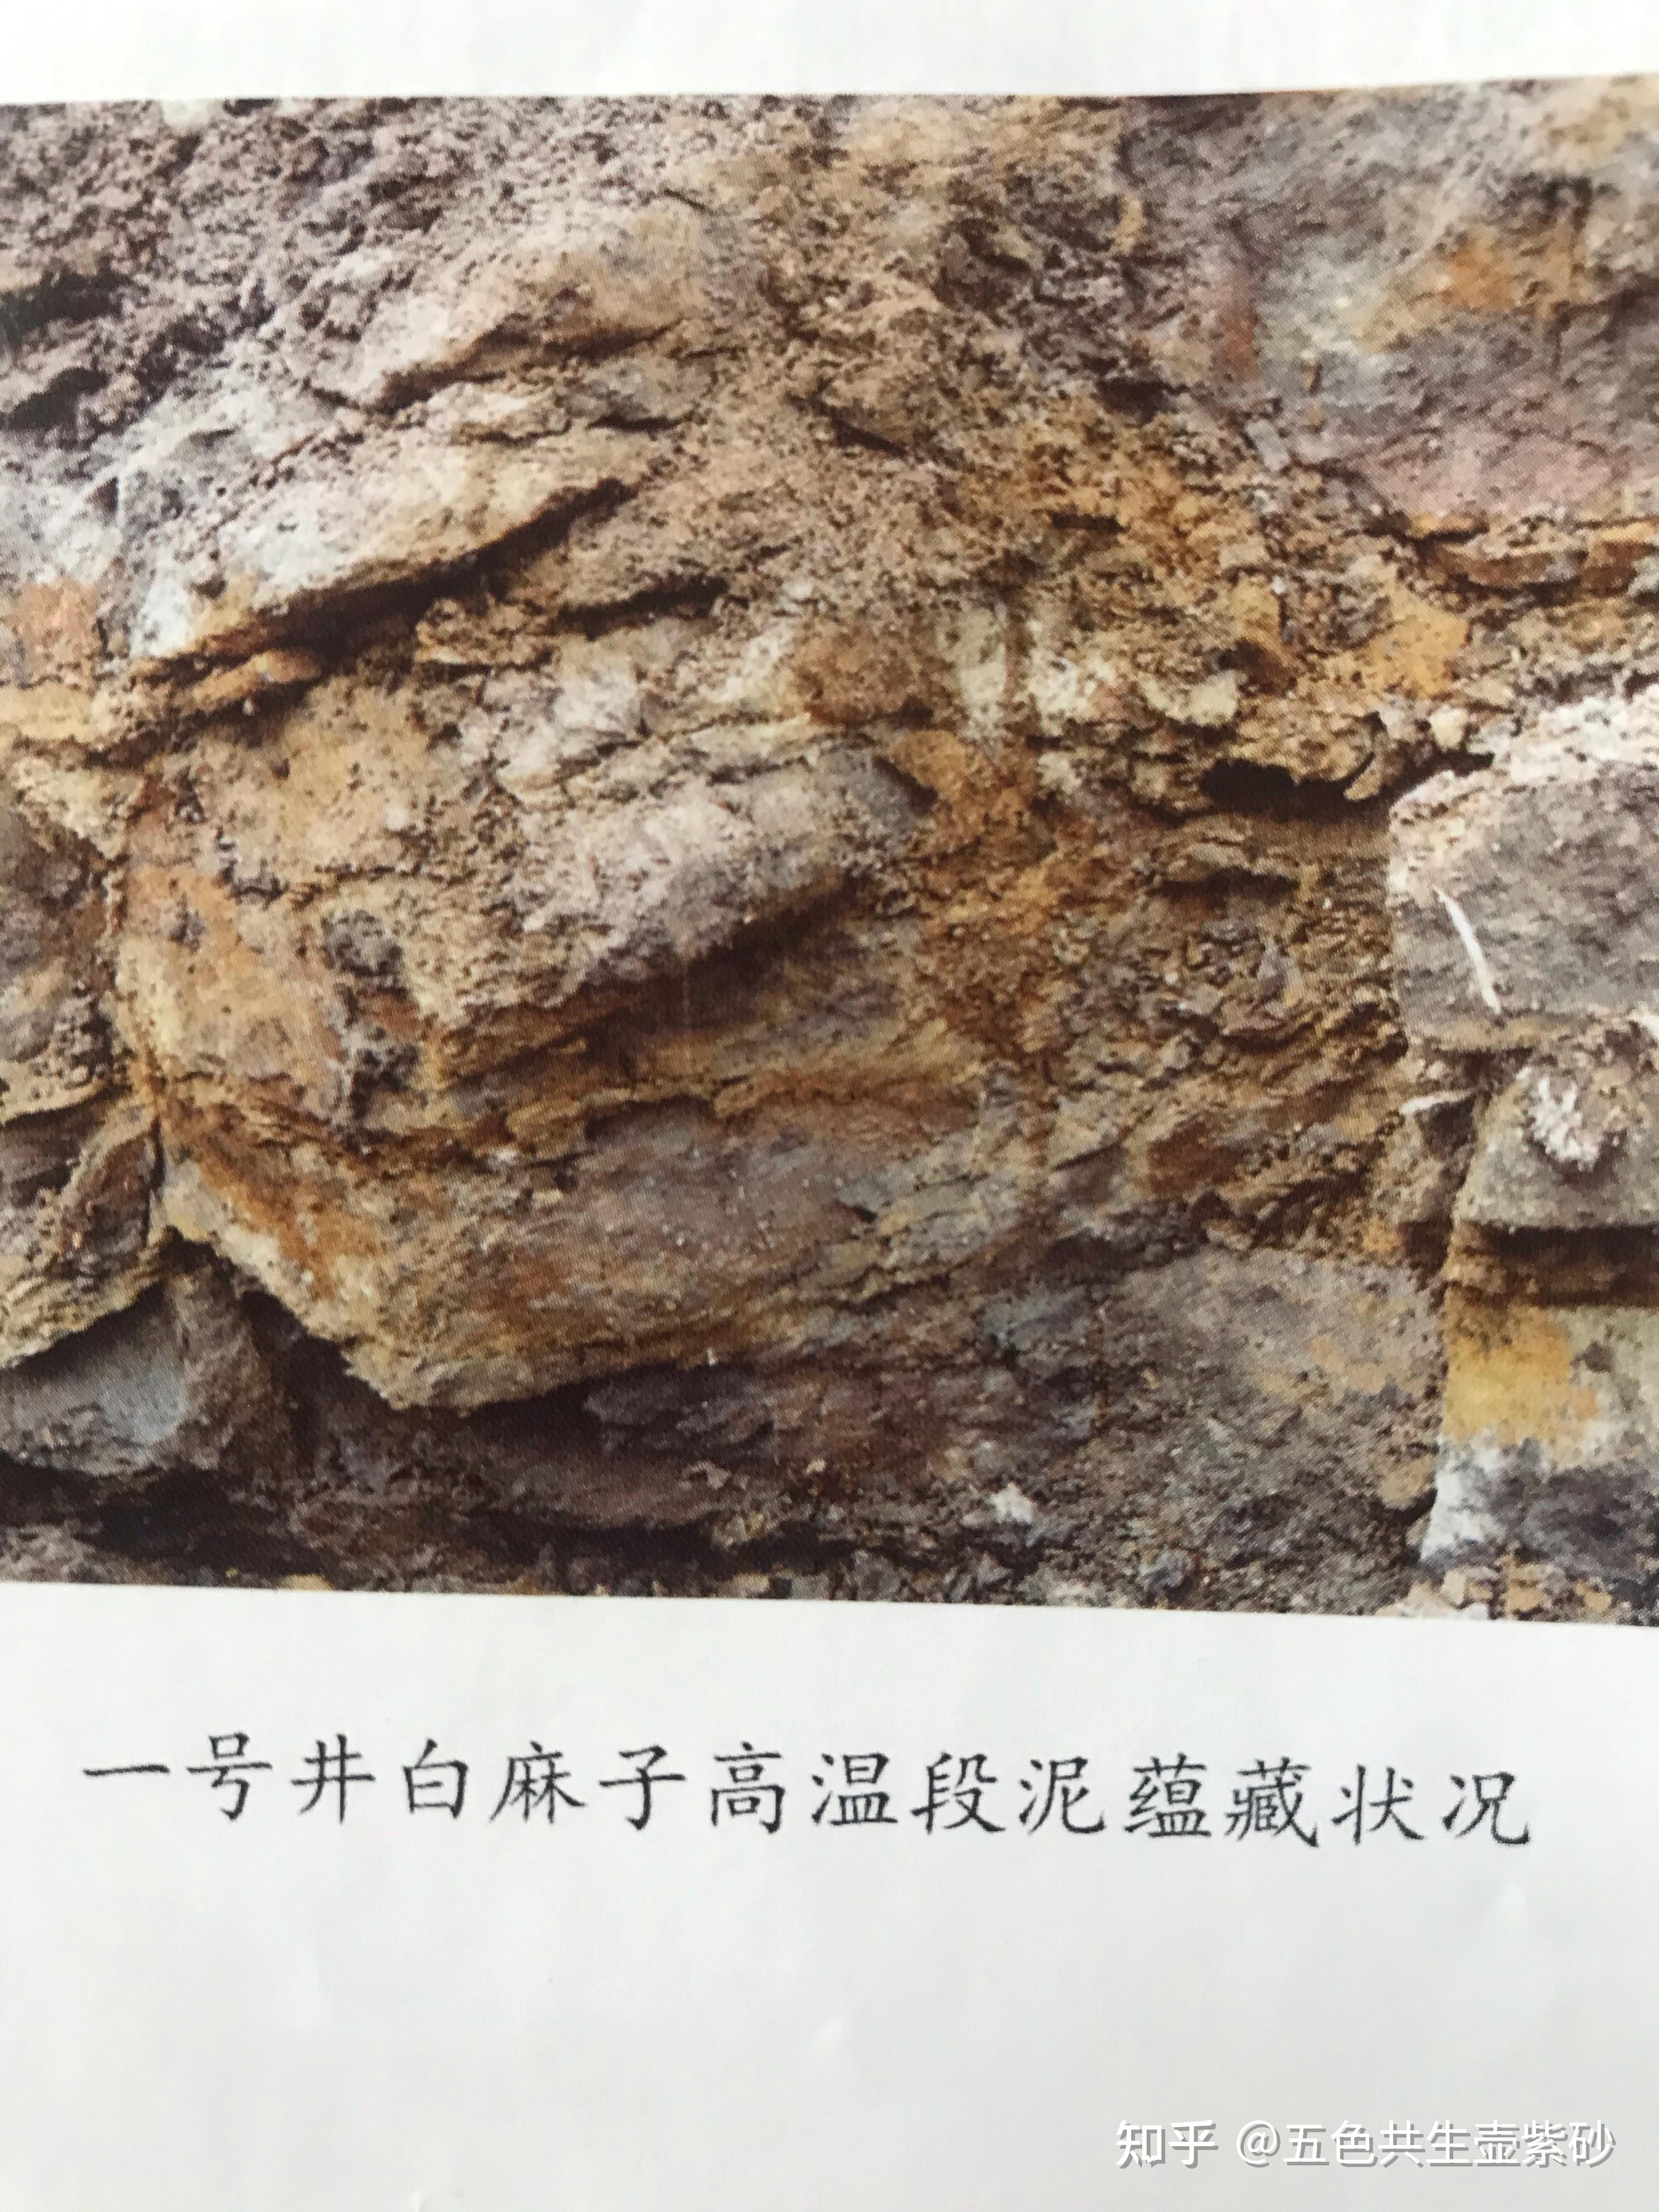 页岩-Shale-地质-岩石-矿物-矿石-标本-高清图片-中国新石器-百科,地质,知识,资料,教学